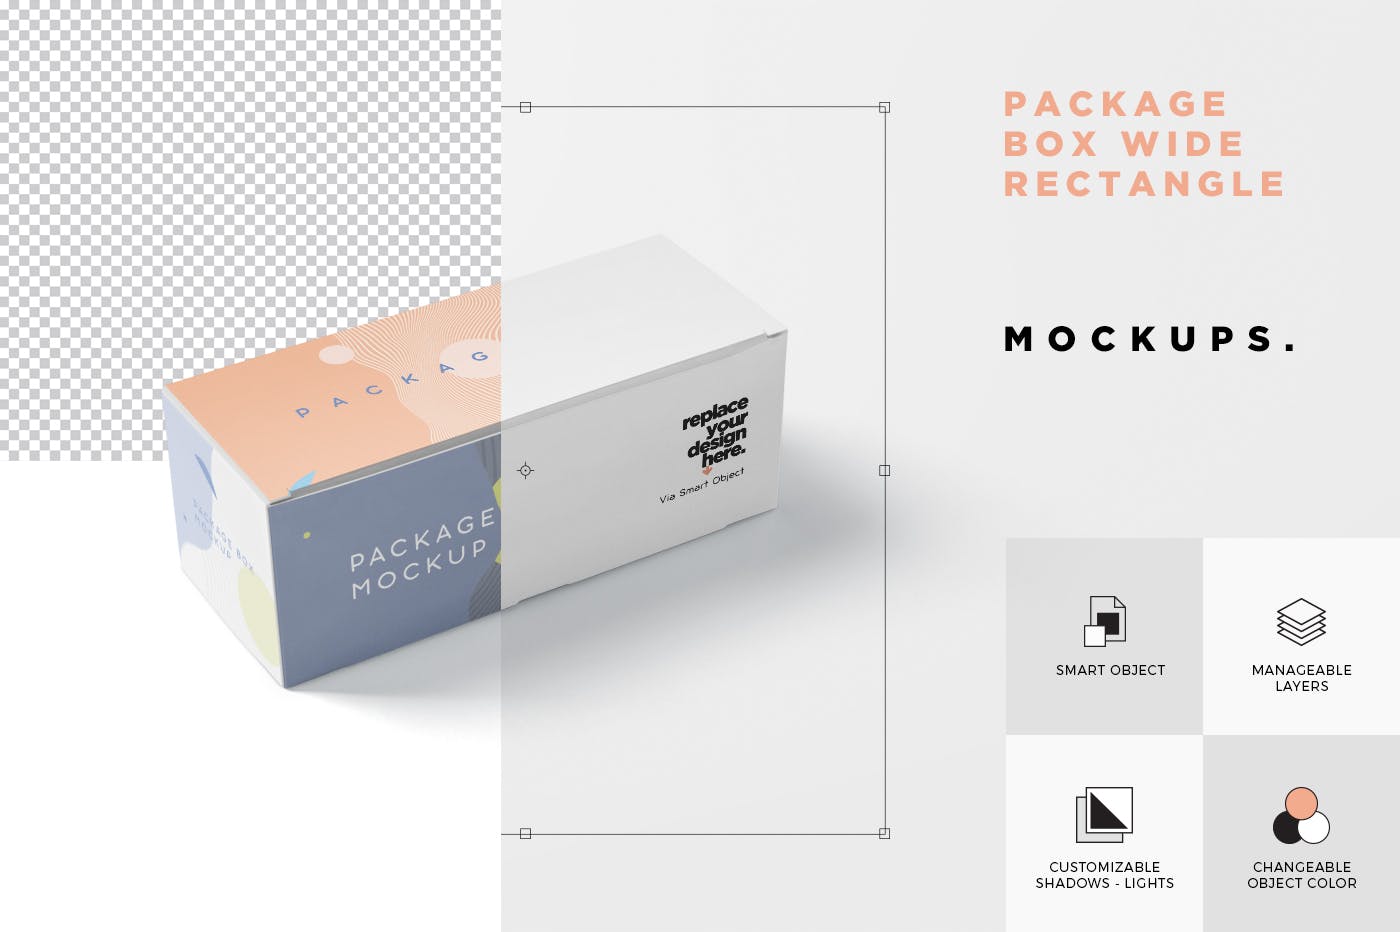 宽矩形包装盒外观设计效果图非凡图库精选 Package Box Mock-Up Set – Wide Rectangle插图(6)